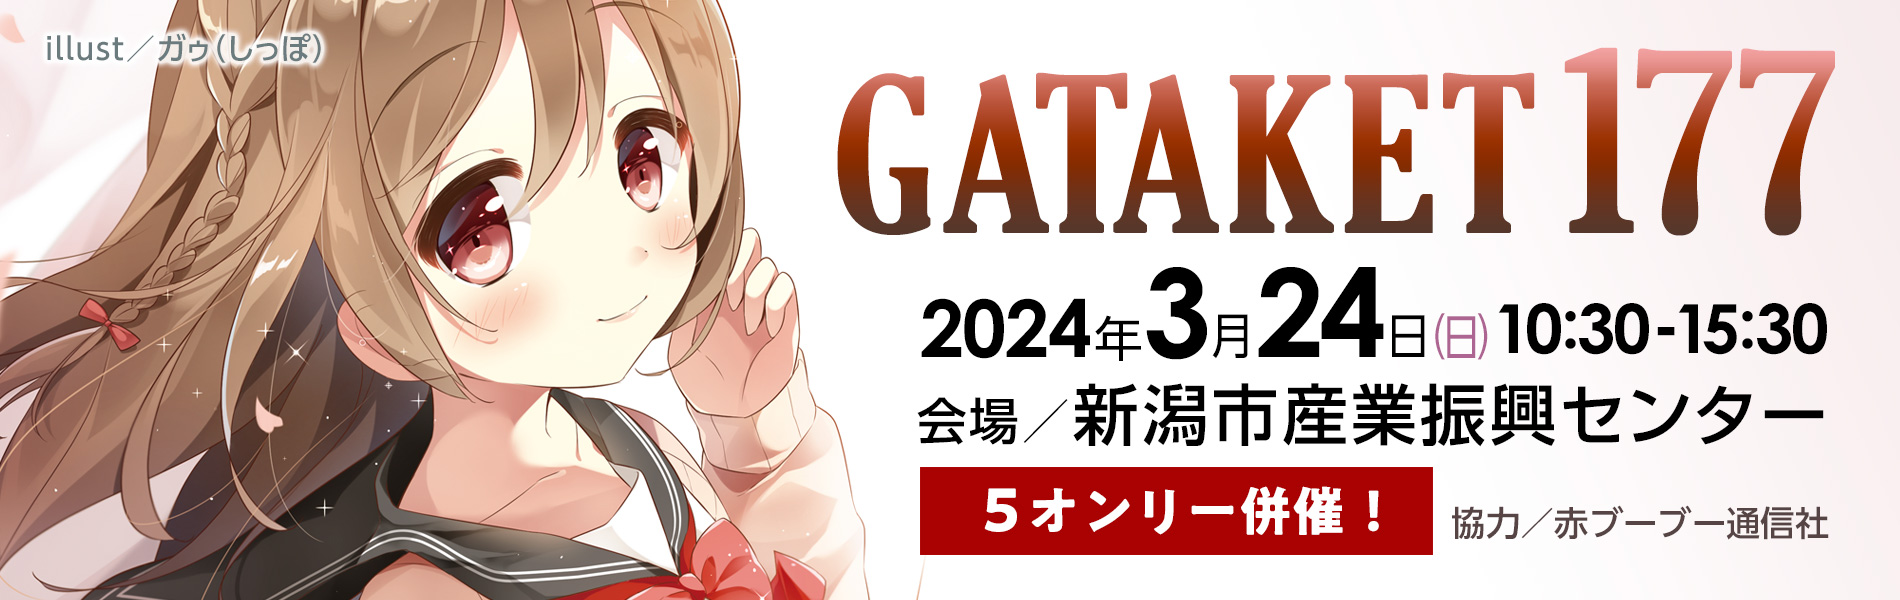 2024.3.24(日)ガタケット177